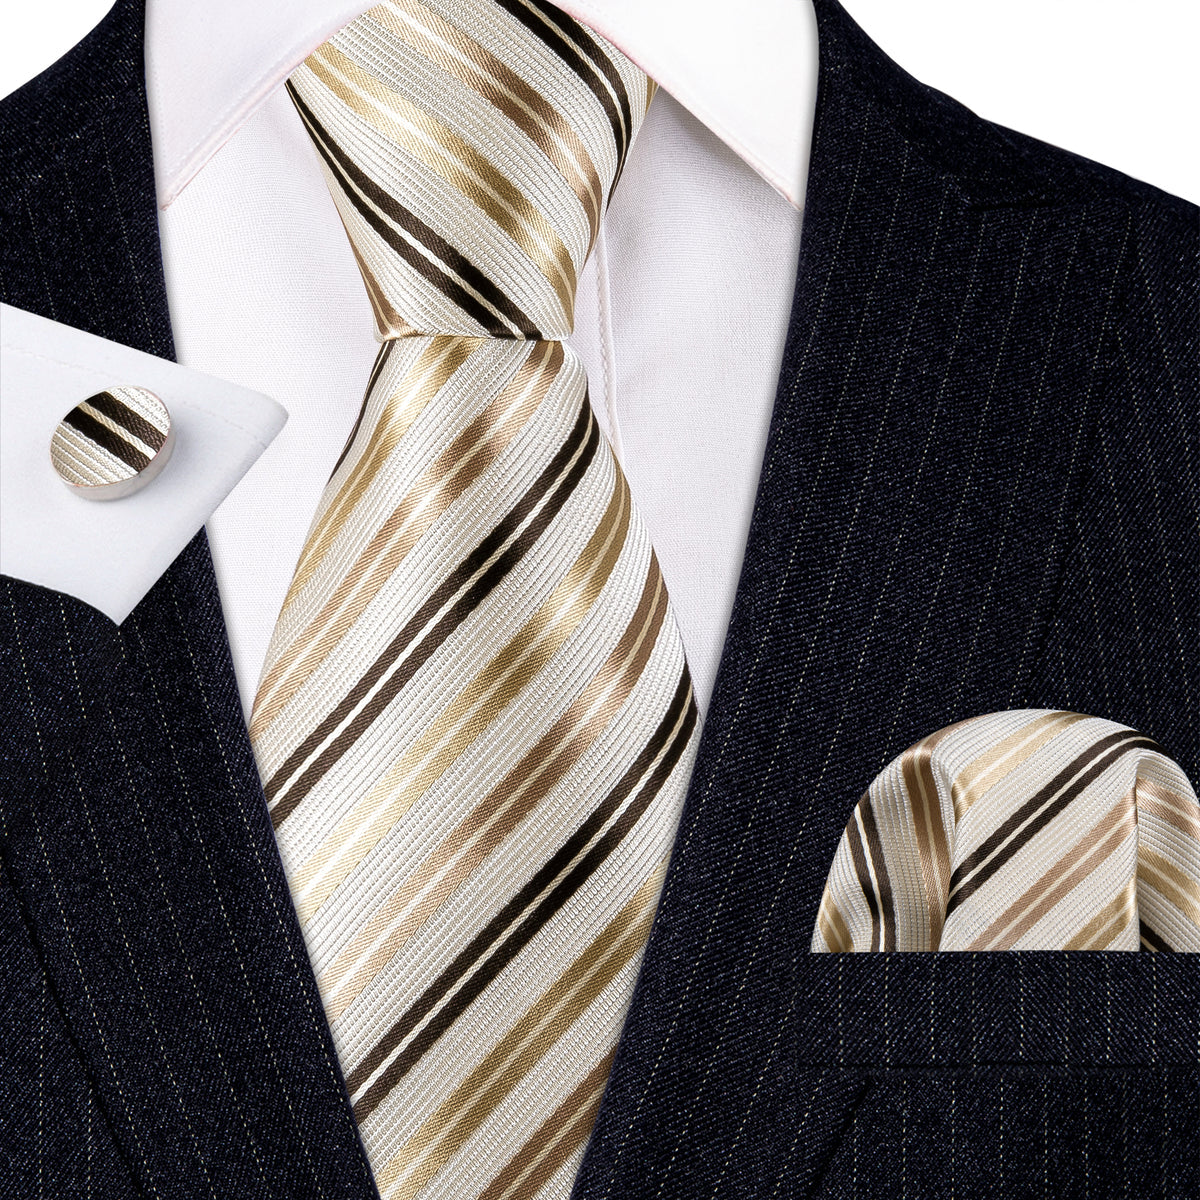 Men’s Silk Coordinated Tie Set - Brown Gold Beige Striped (5434)